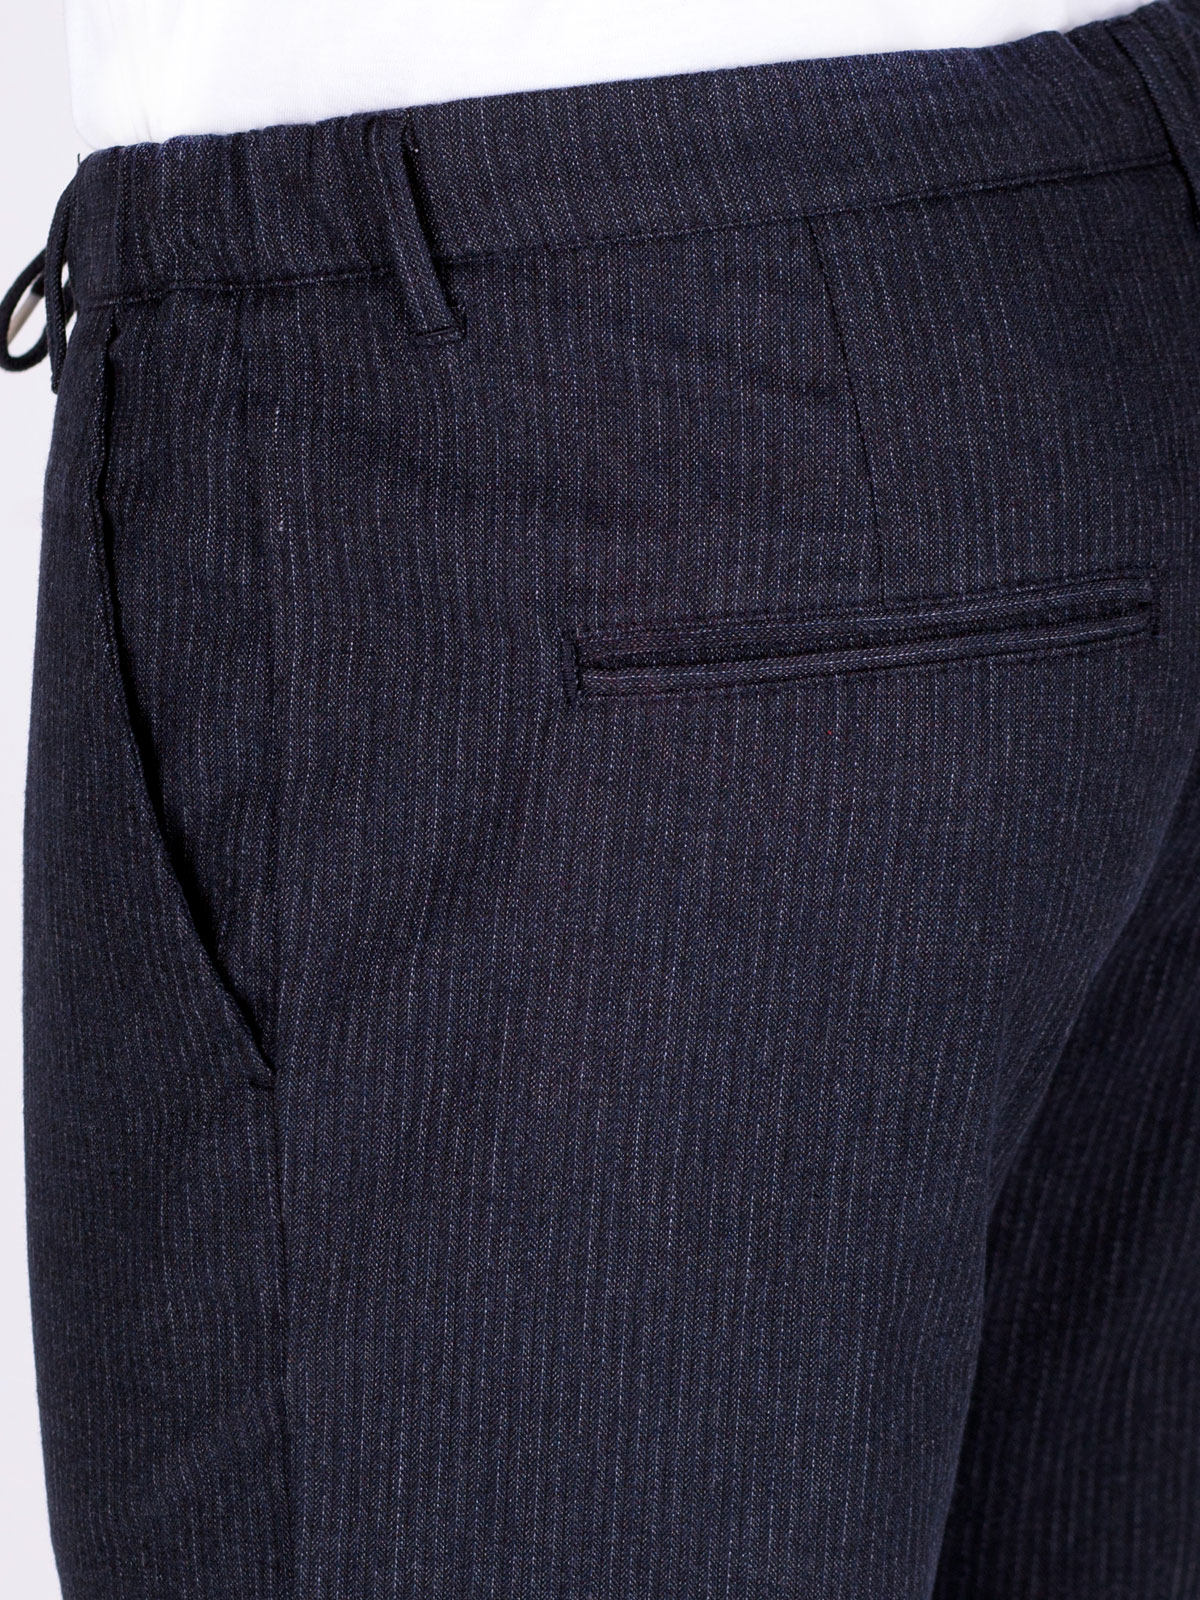 Μπλε ριγέ παντελόνι με κορδόνια - 60283 € 66.93 img4